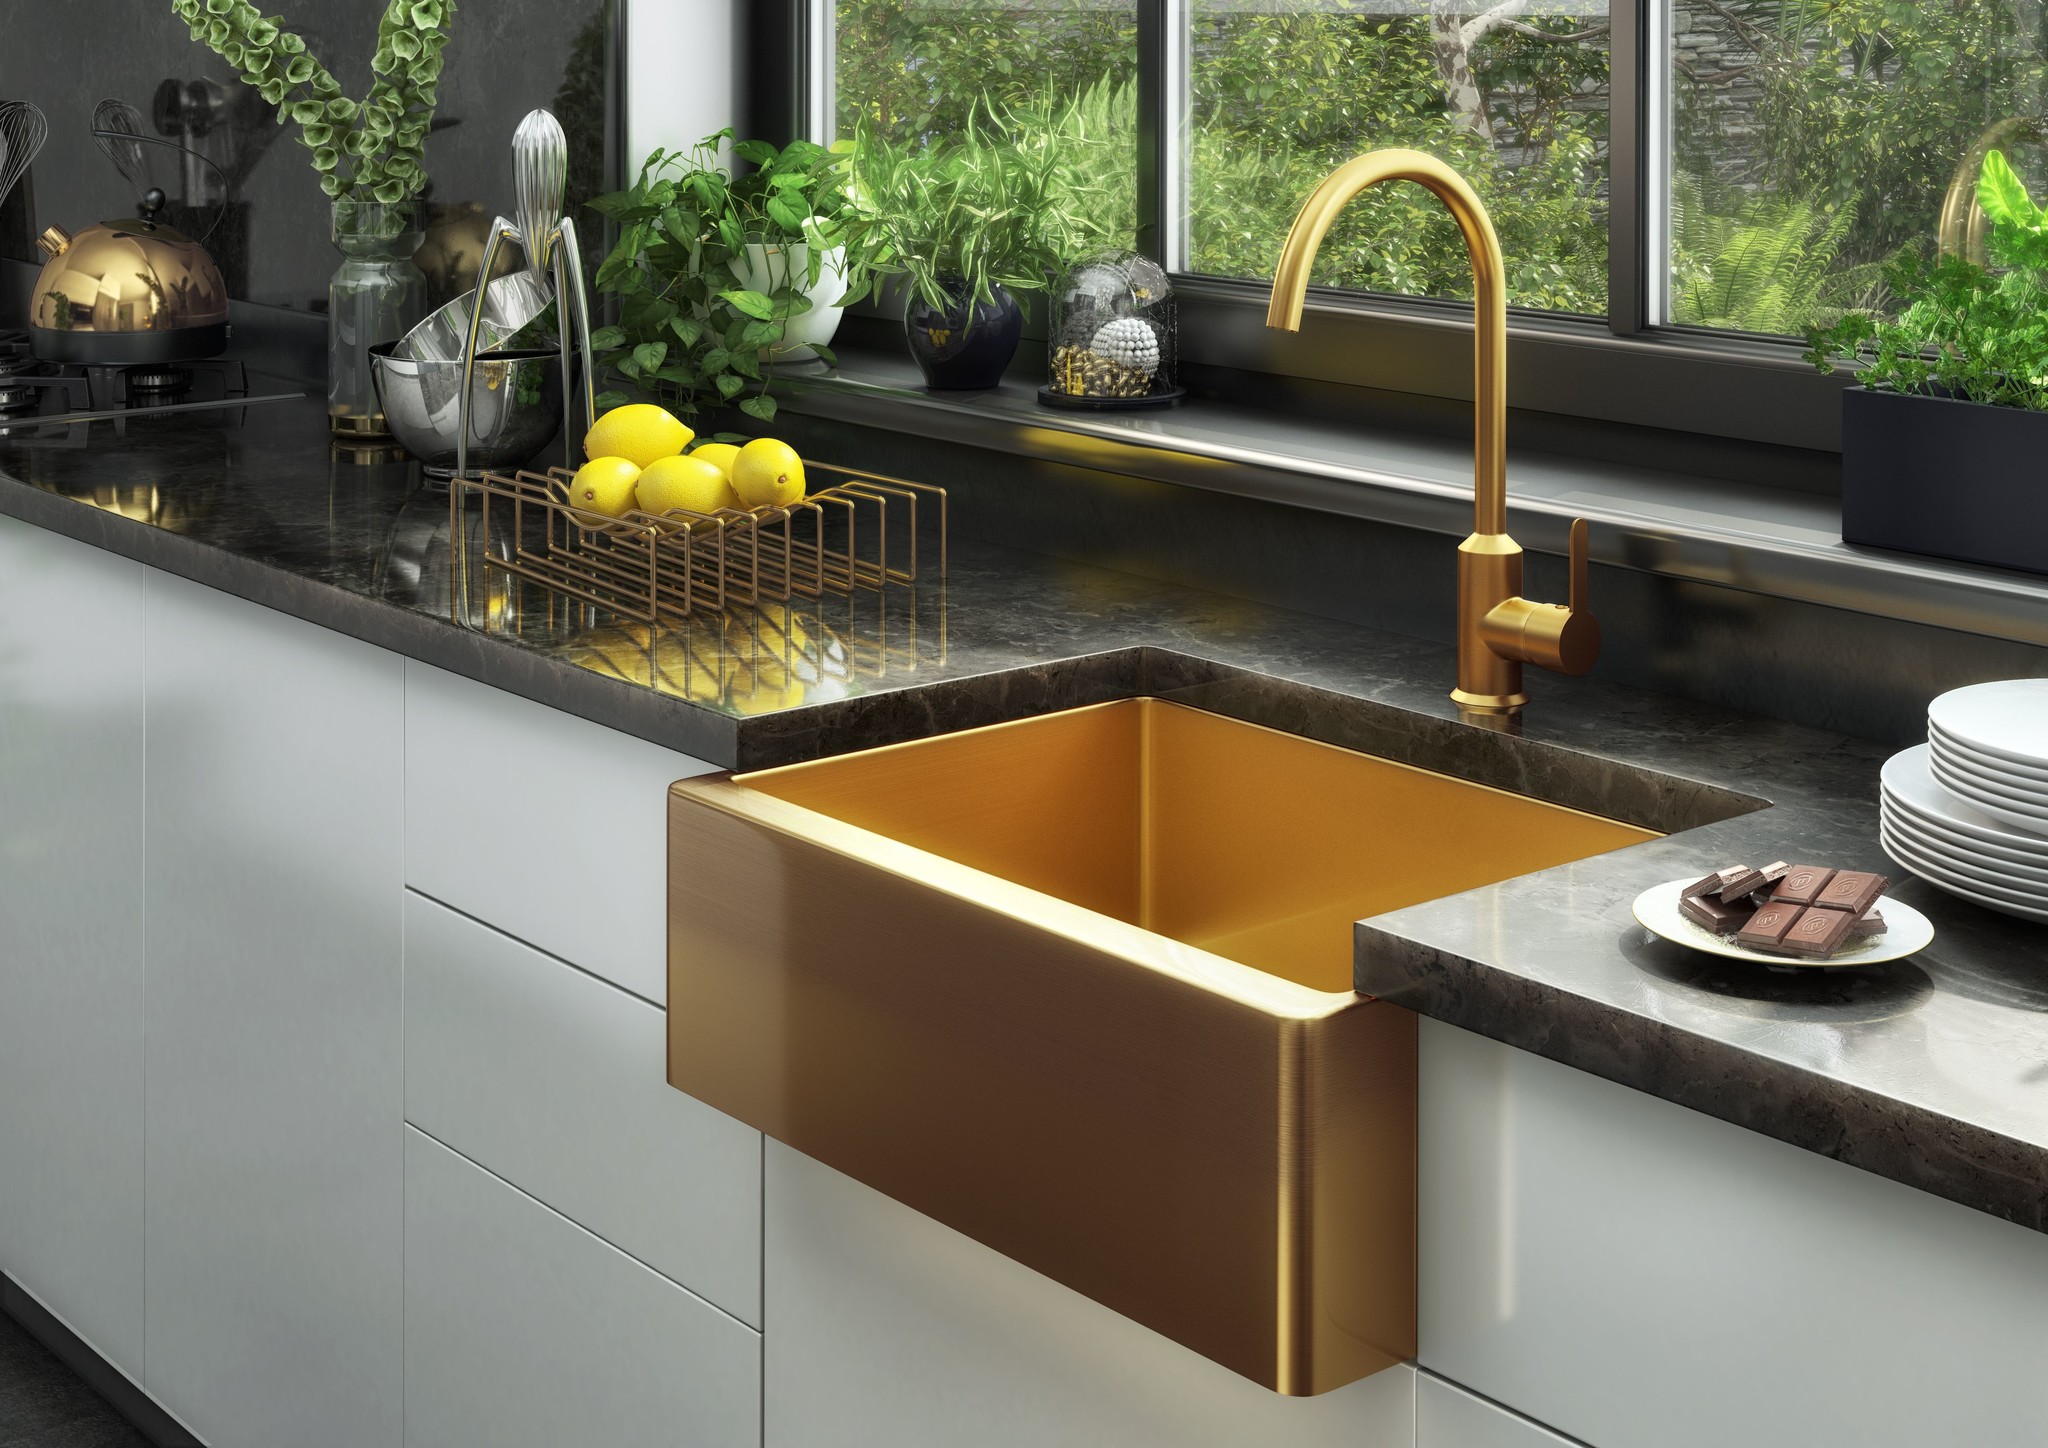 Midas Statement Gold Kitchen Sink Luxury Tiles